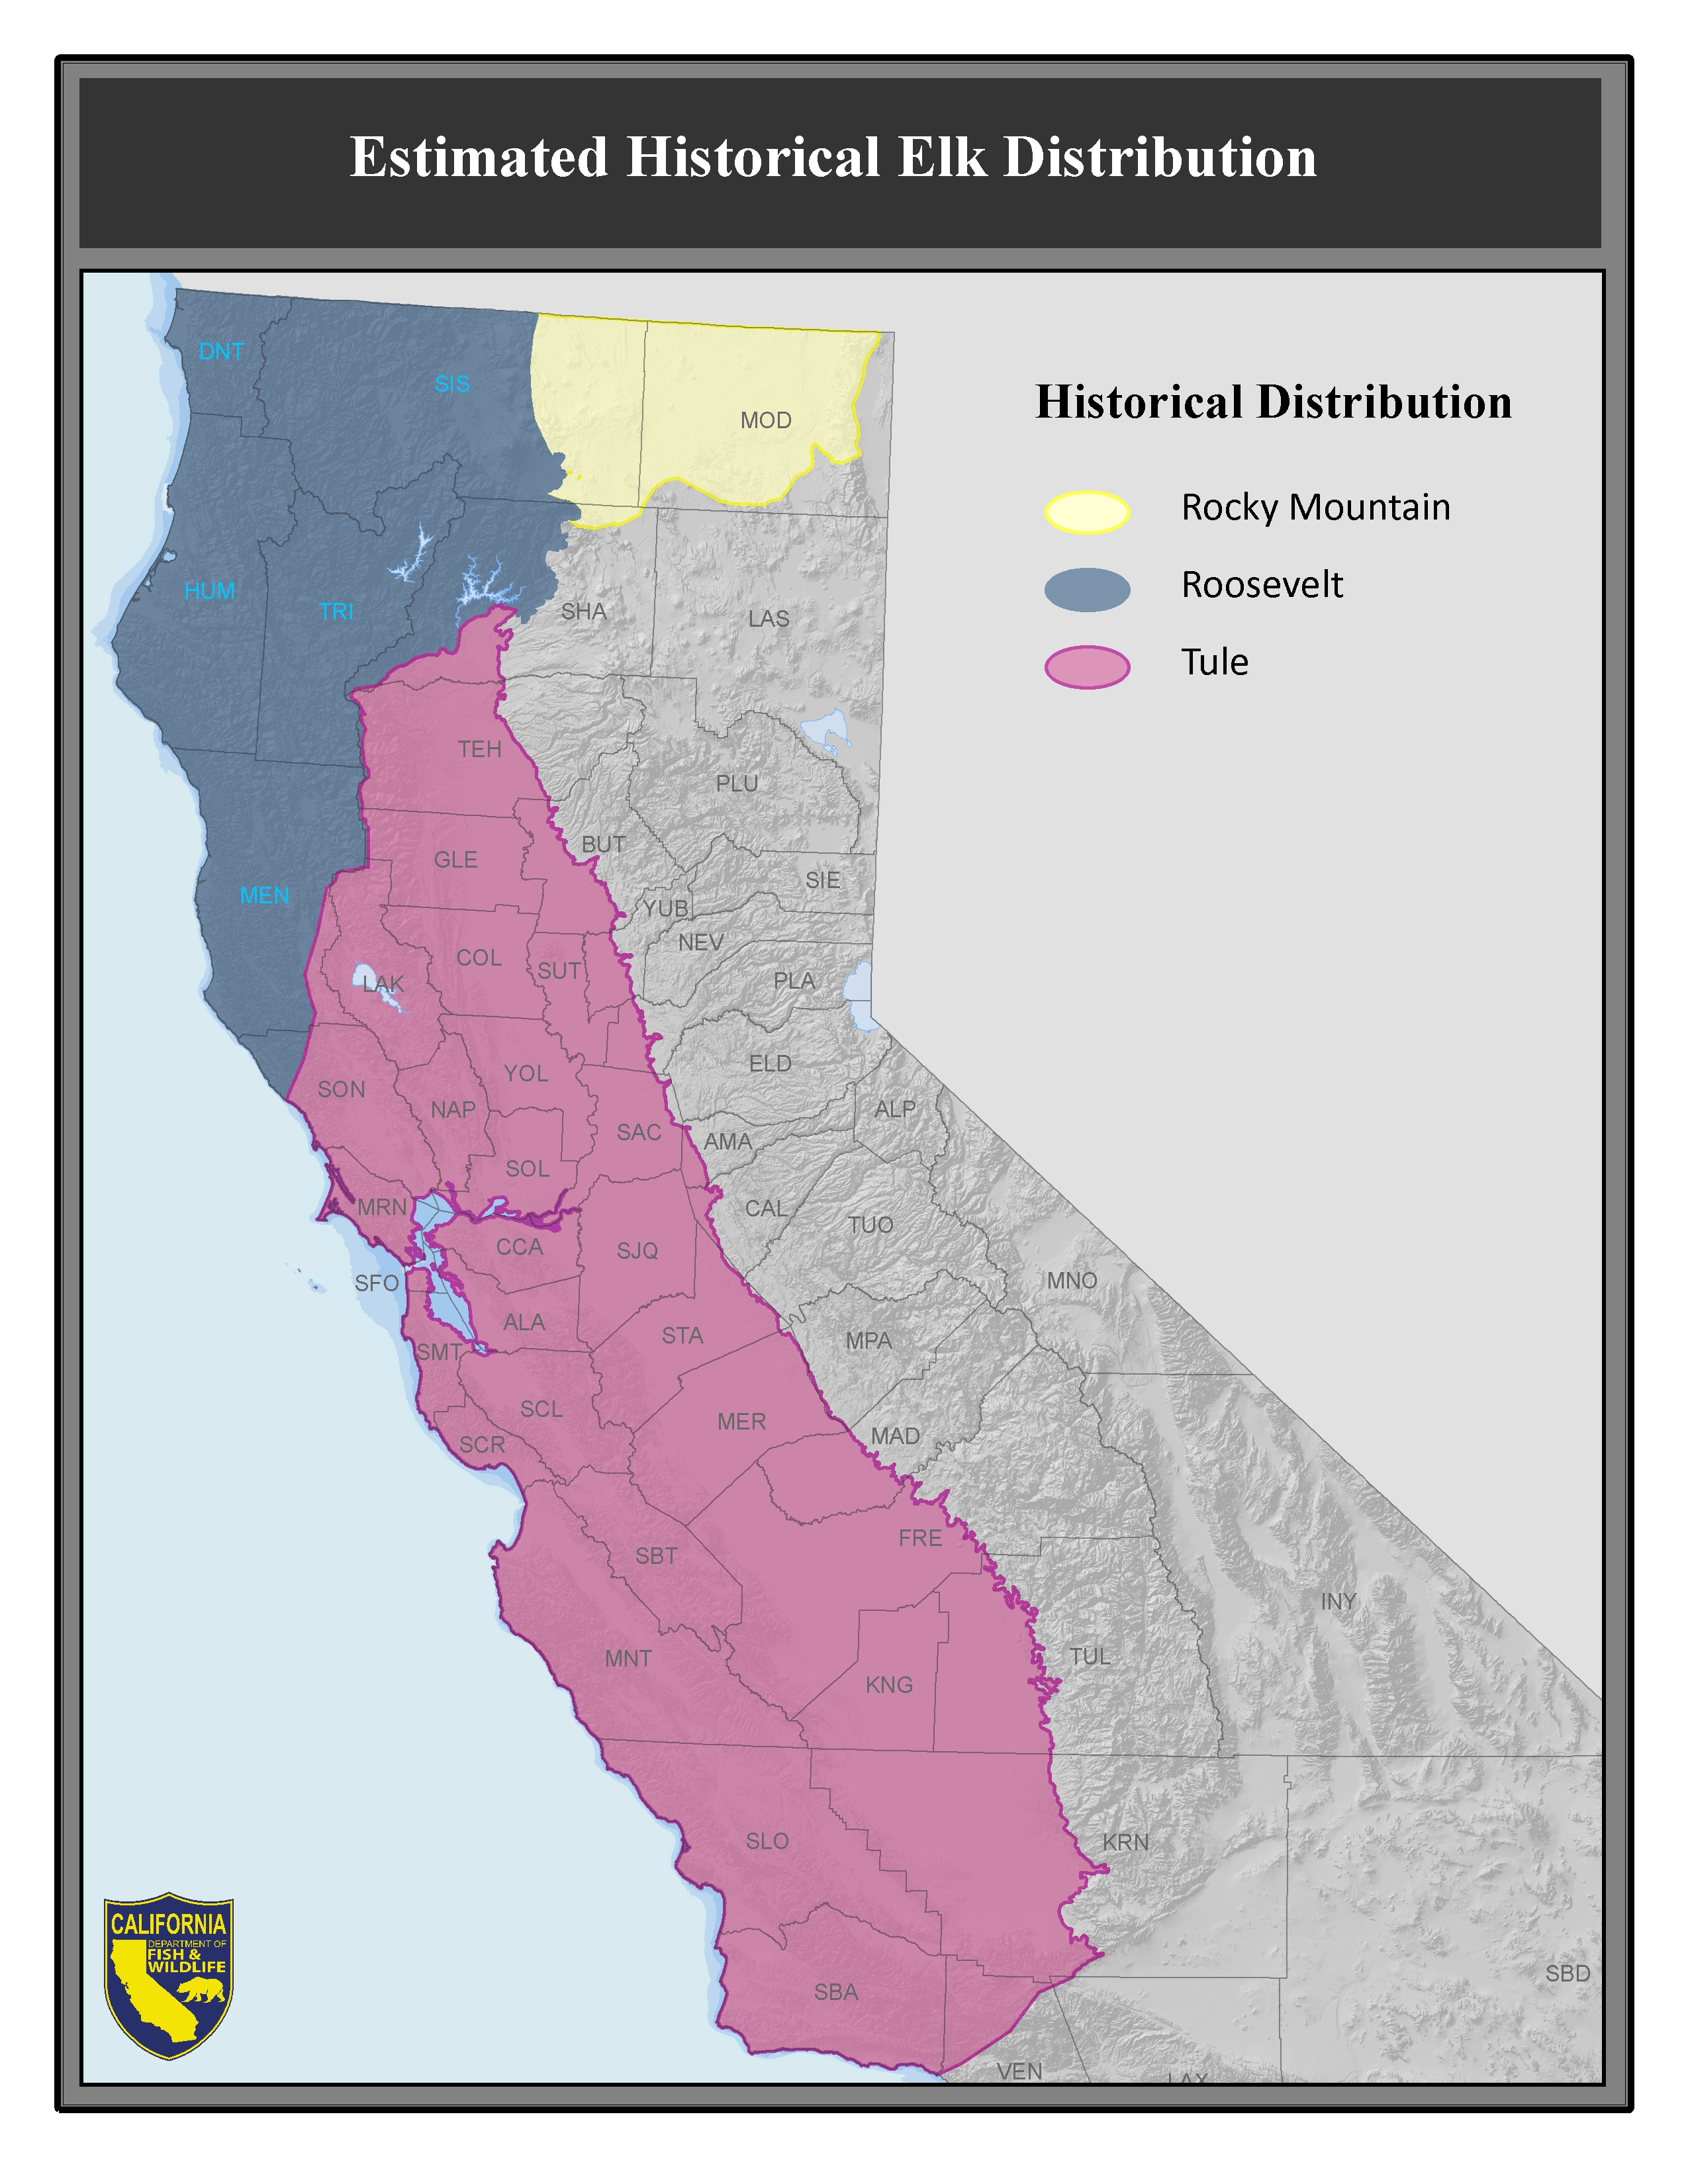 Previous distribution of Elk in California